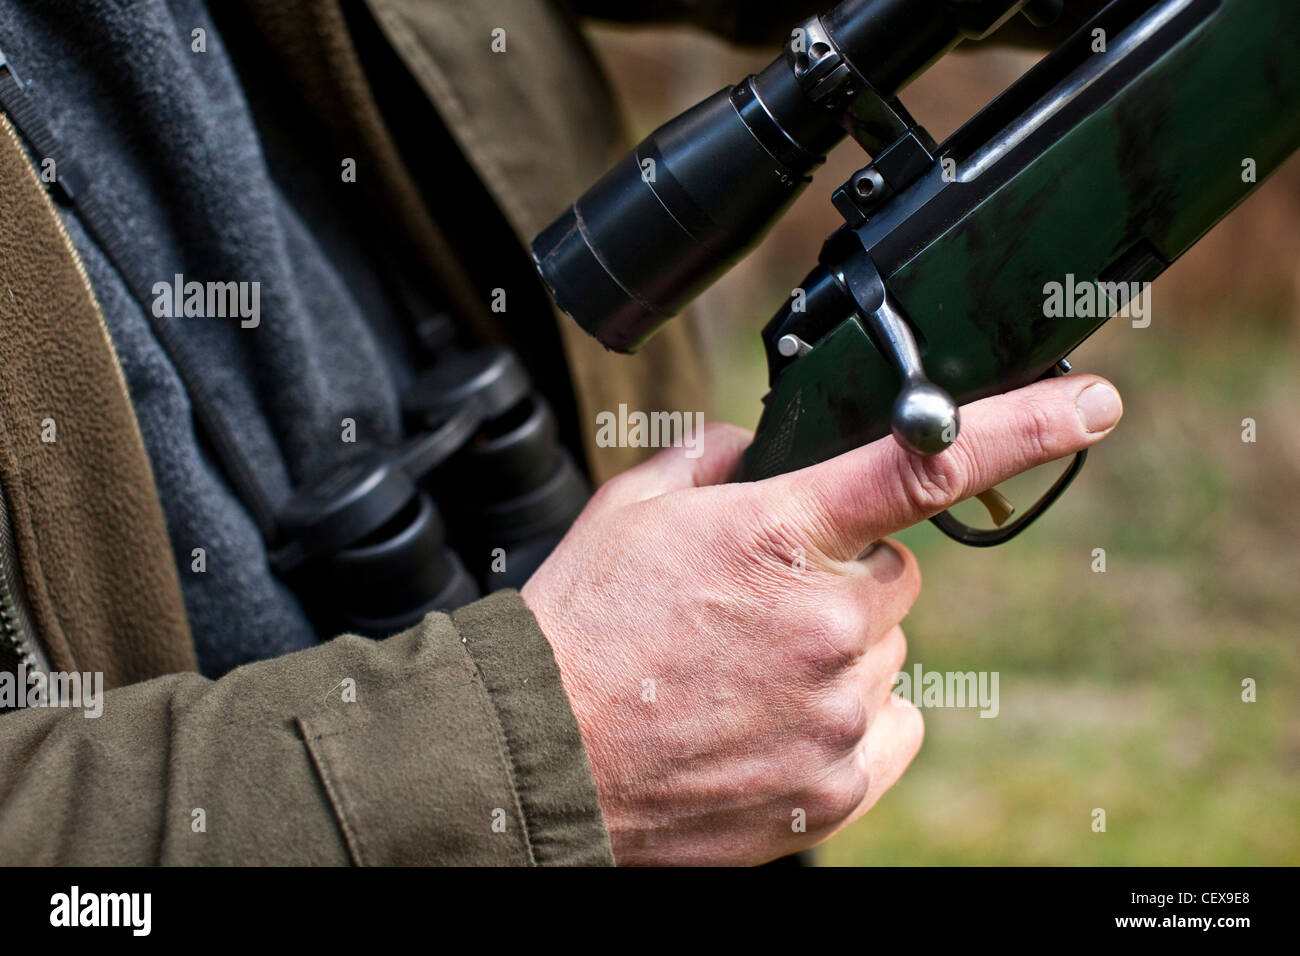 L'homme avec son doigt sur la gâchette d'une arme à feu, la chasse au chevreuil dans la forêt de Thetford, UK Banque D'Images